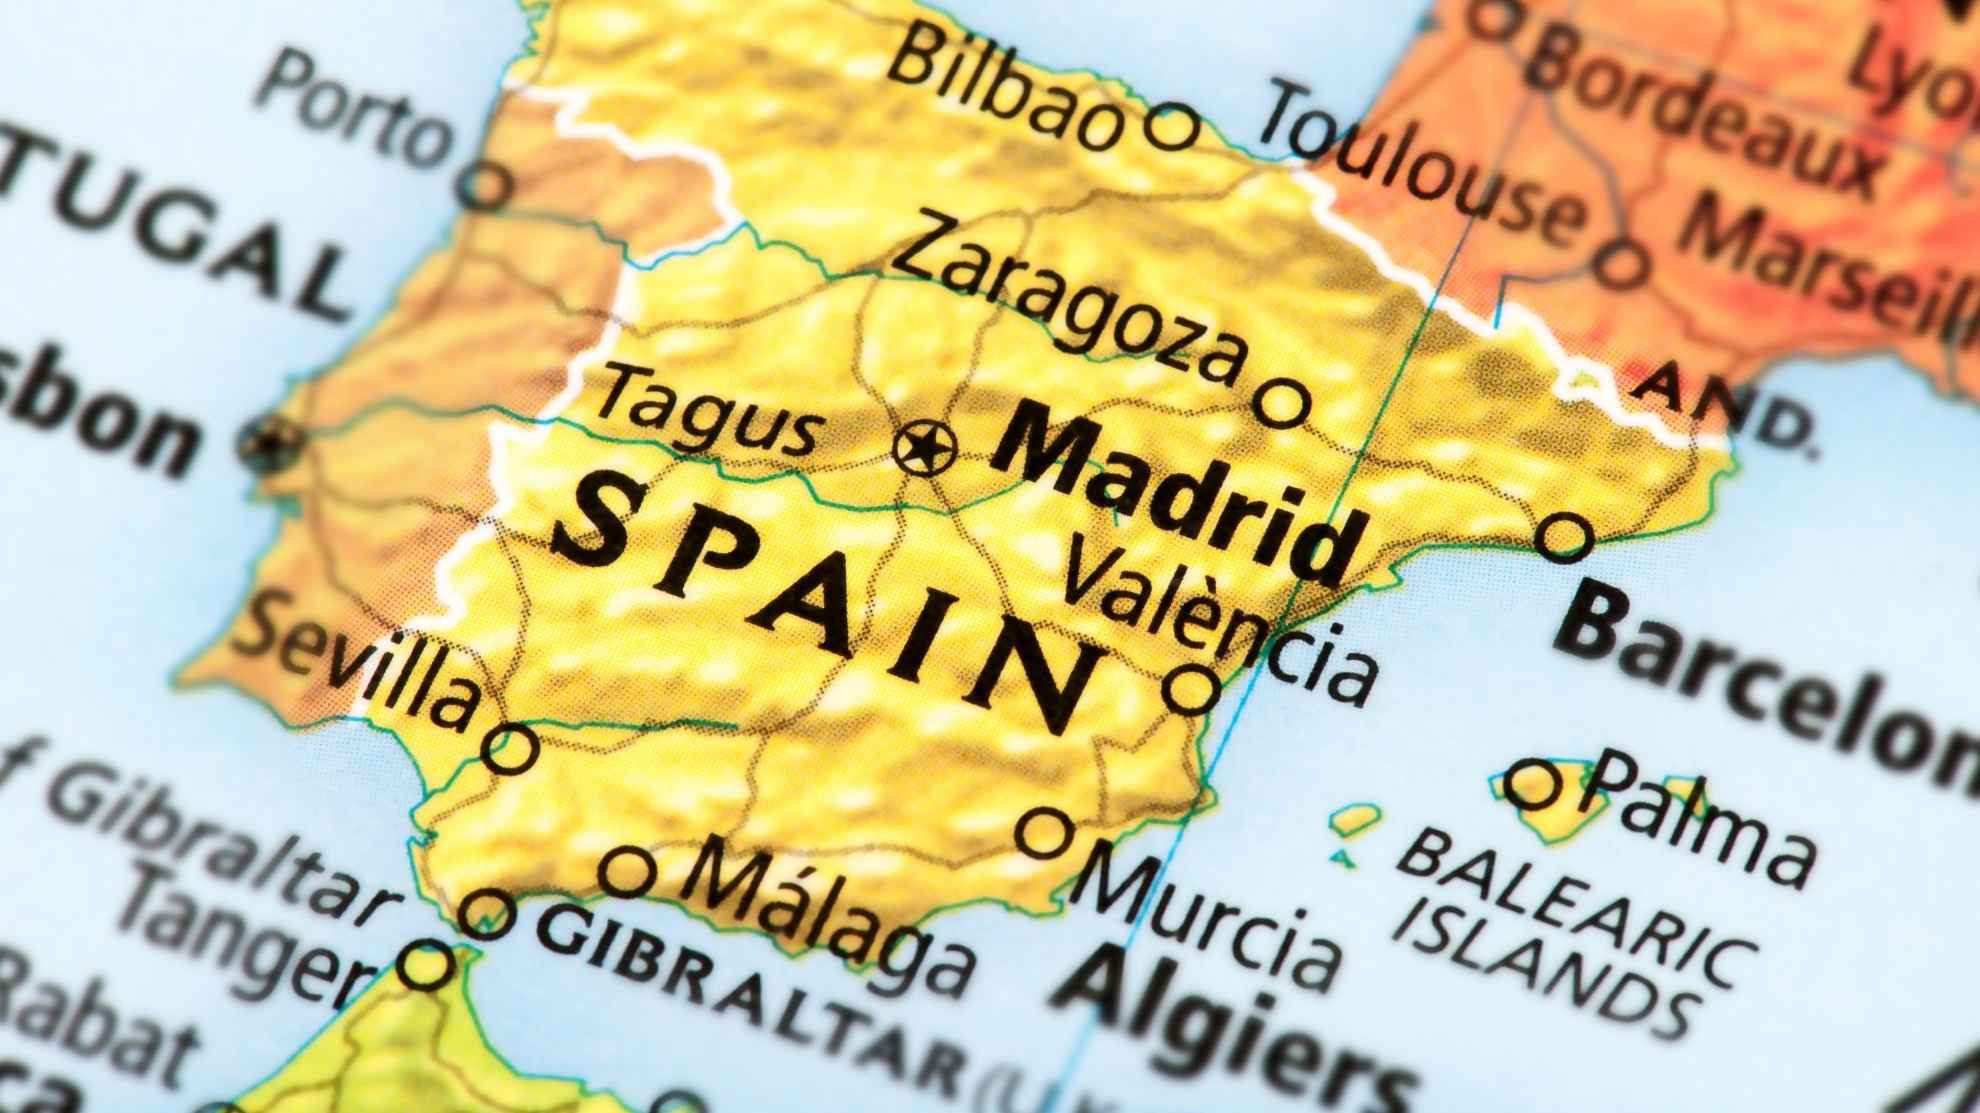 8 ideias de Mapas  cidades de espanha, aeroporto de madrid